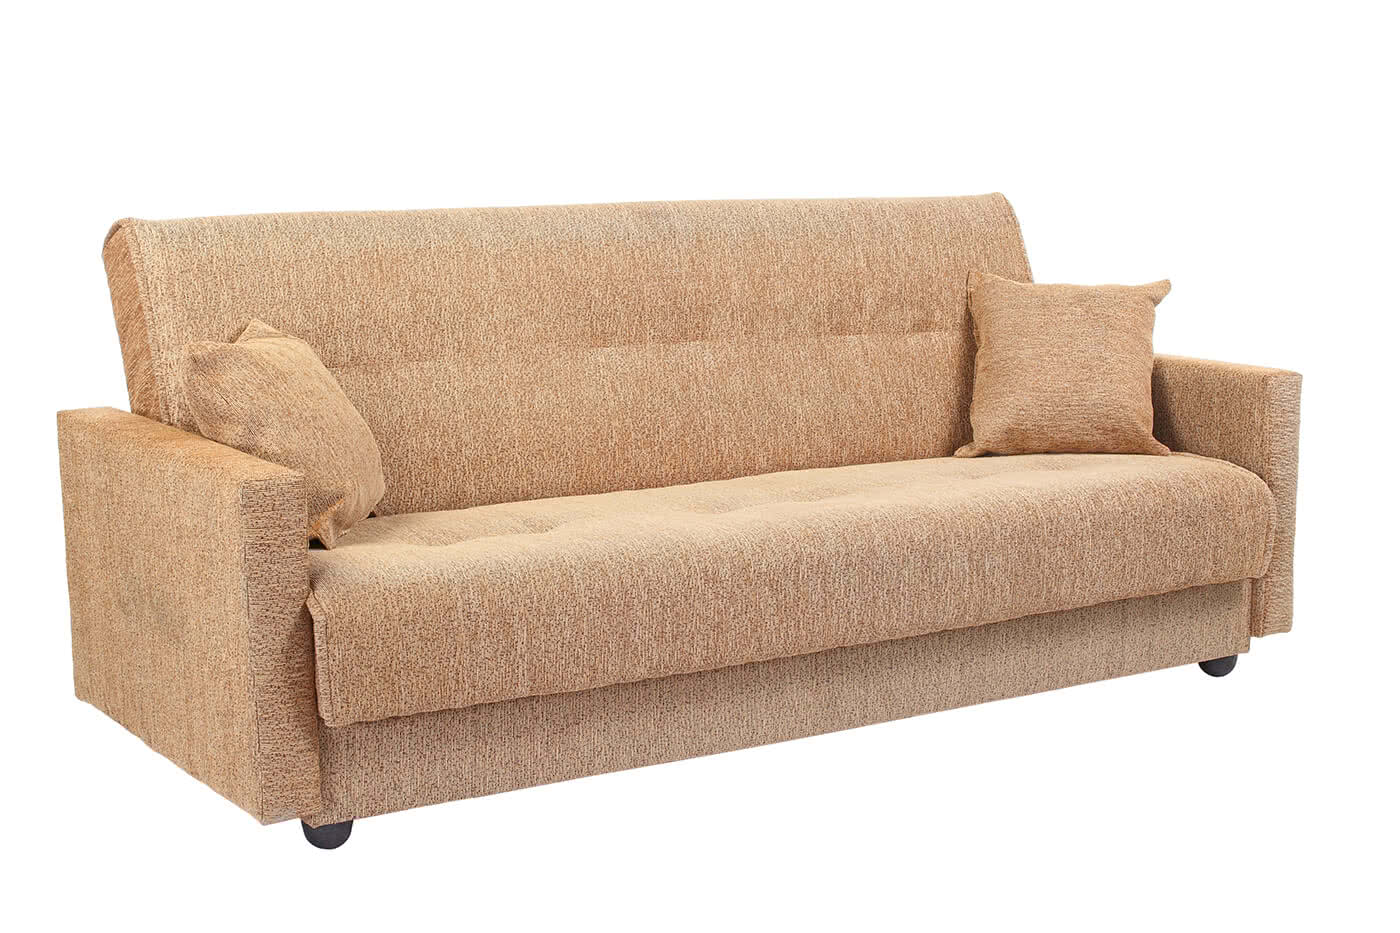 Купить диван FotoDivan Диван Милан, Бежевый 120 х 190 см Бежевый дешево на официальном сайте